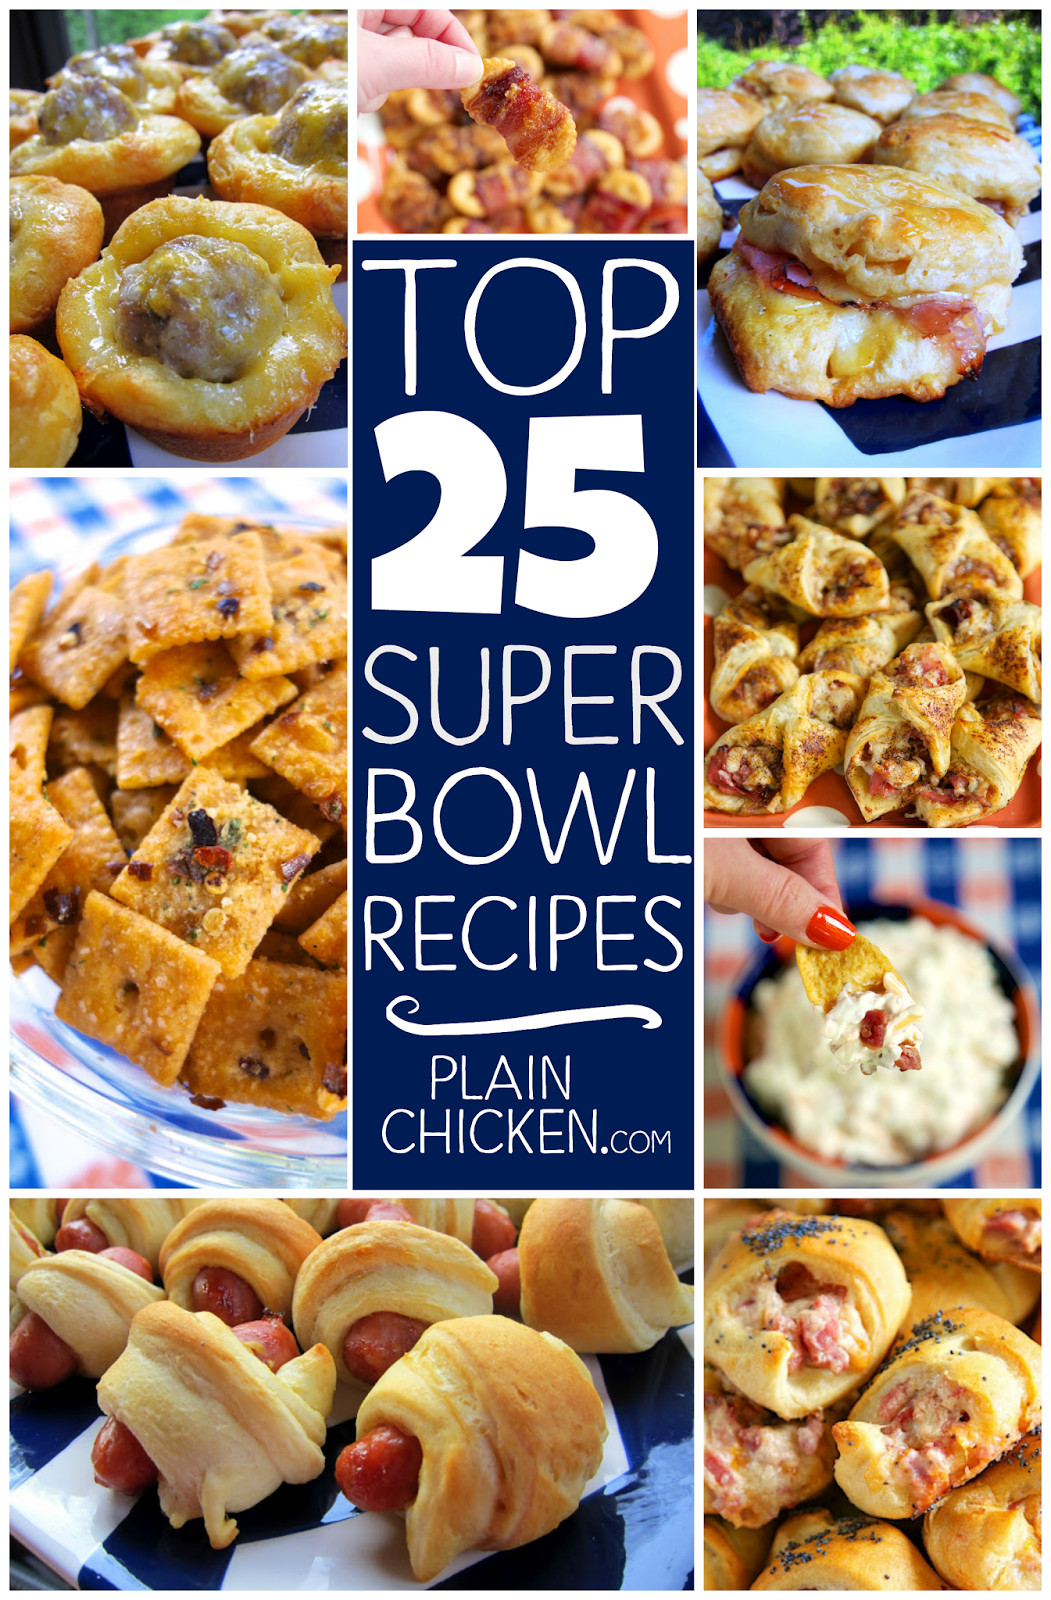 Chicken Super Bowl Recipes
 Top 25 Super Bowl Recipes